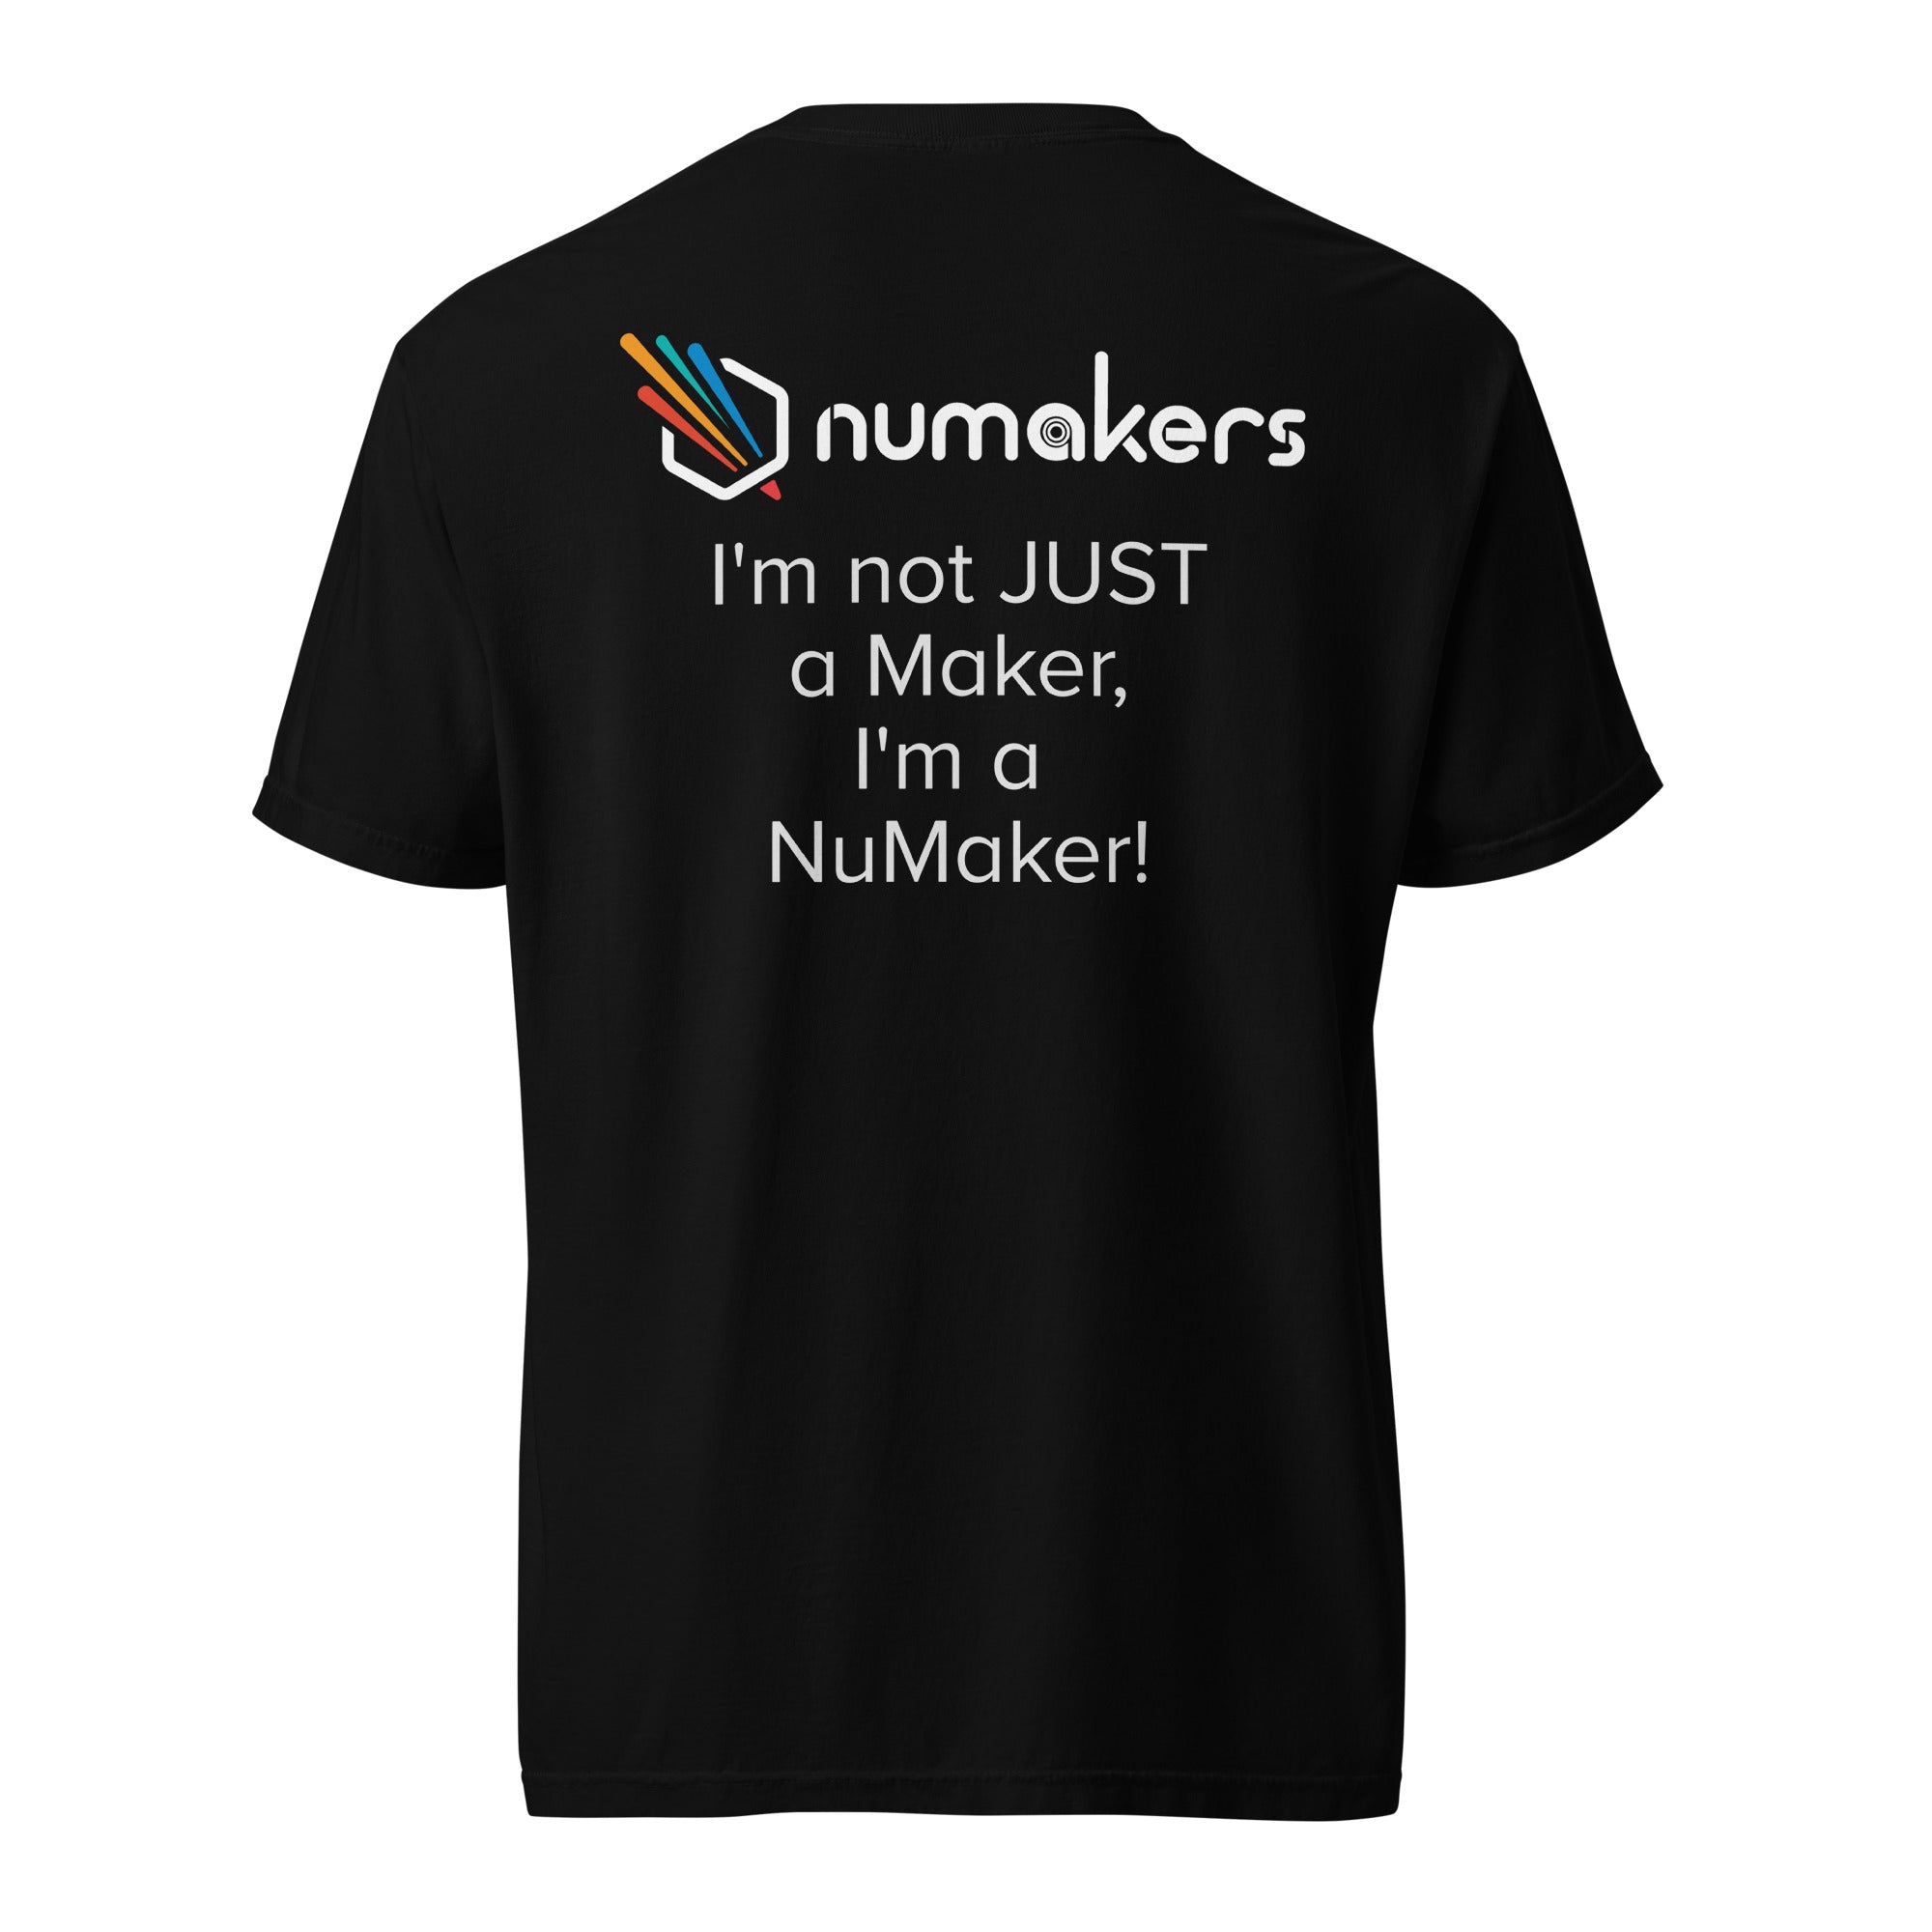 Numakers Tee - I'm a NuMaker